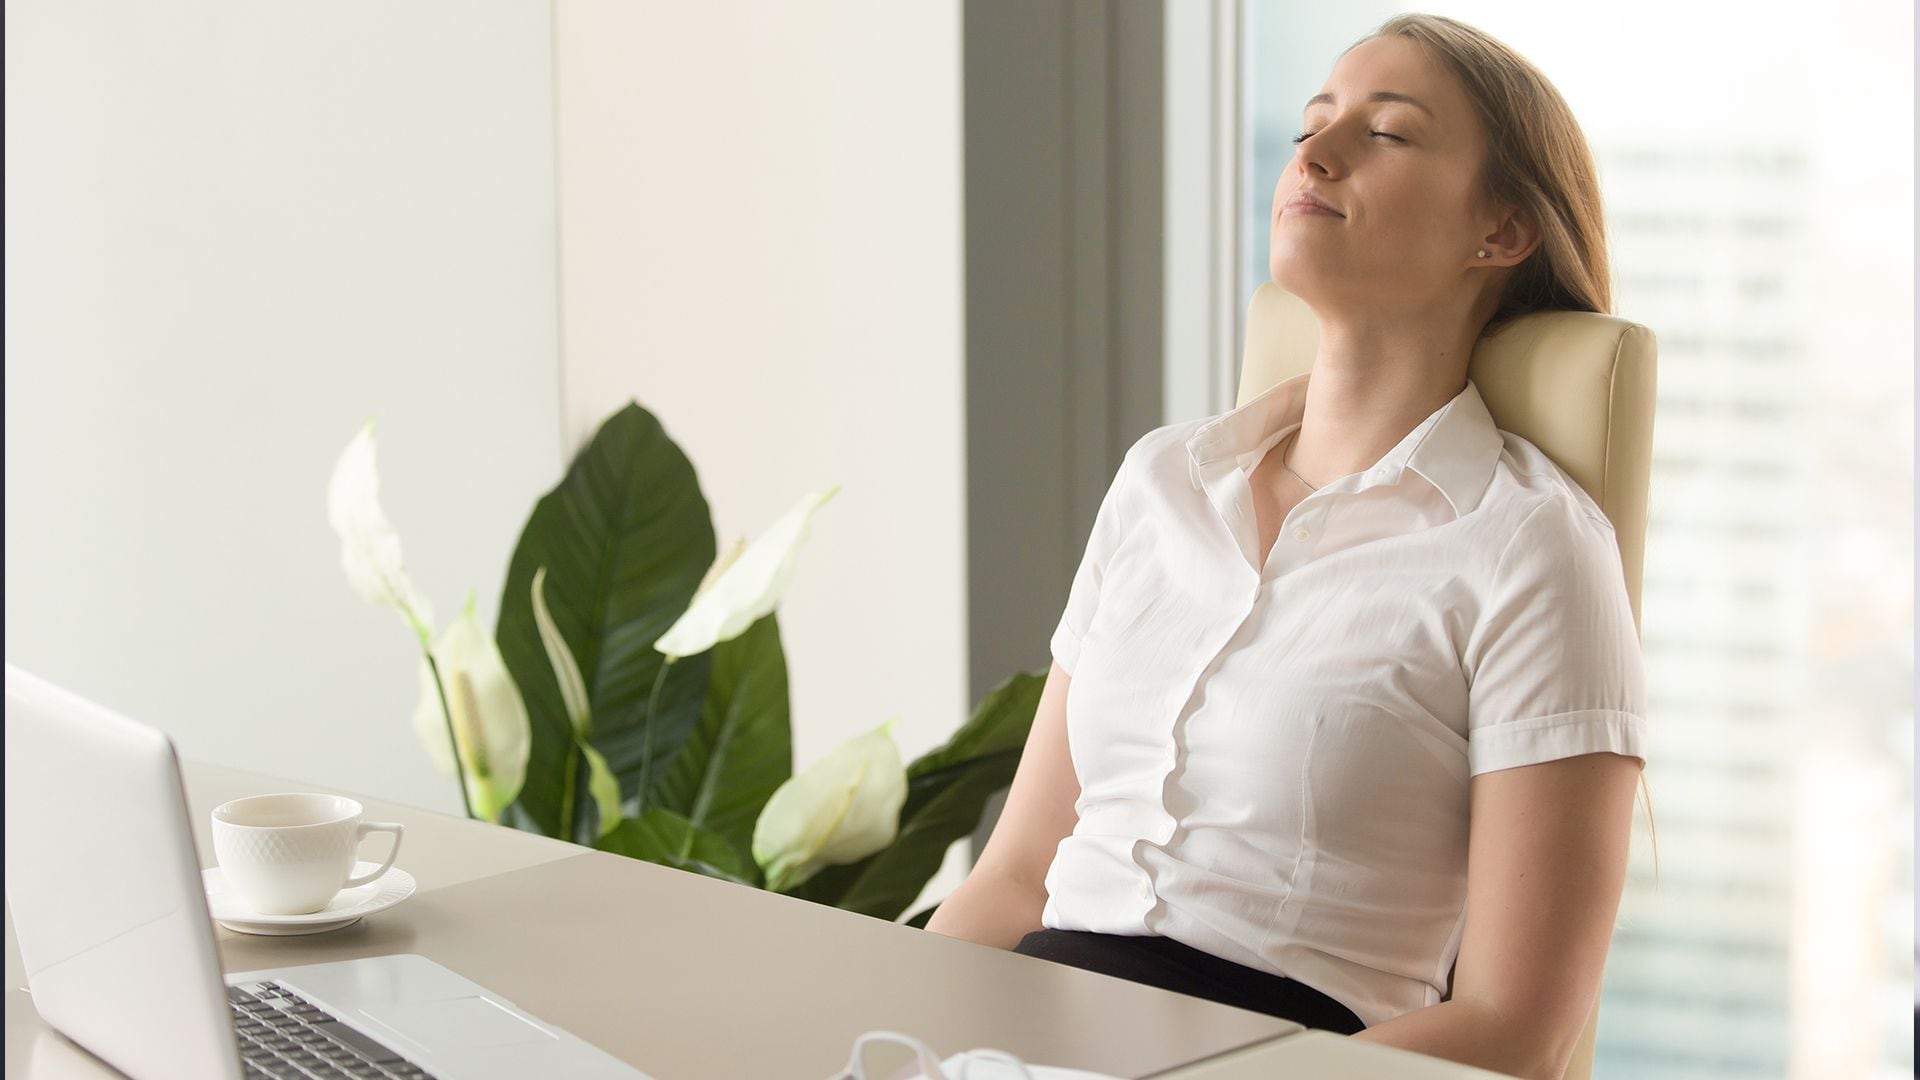 Respirar larga y profundamente prestando atención a la respiración es un método recomendado por la experta (Getty)
